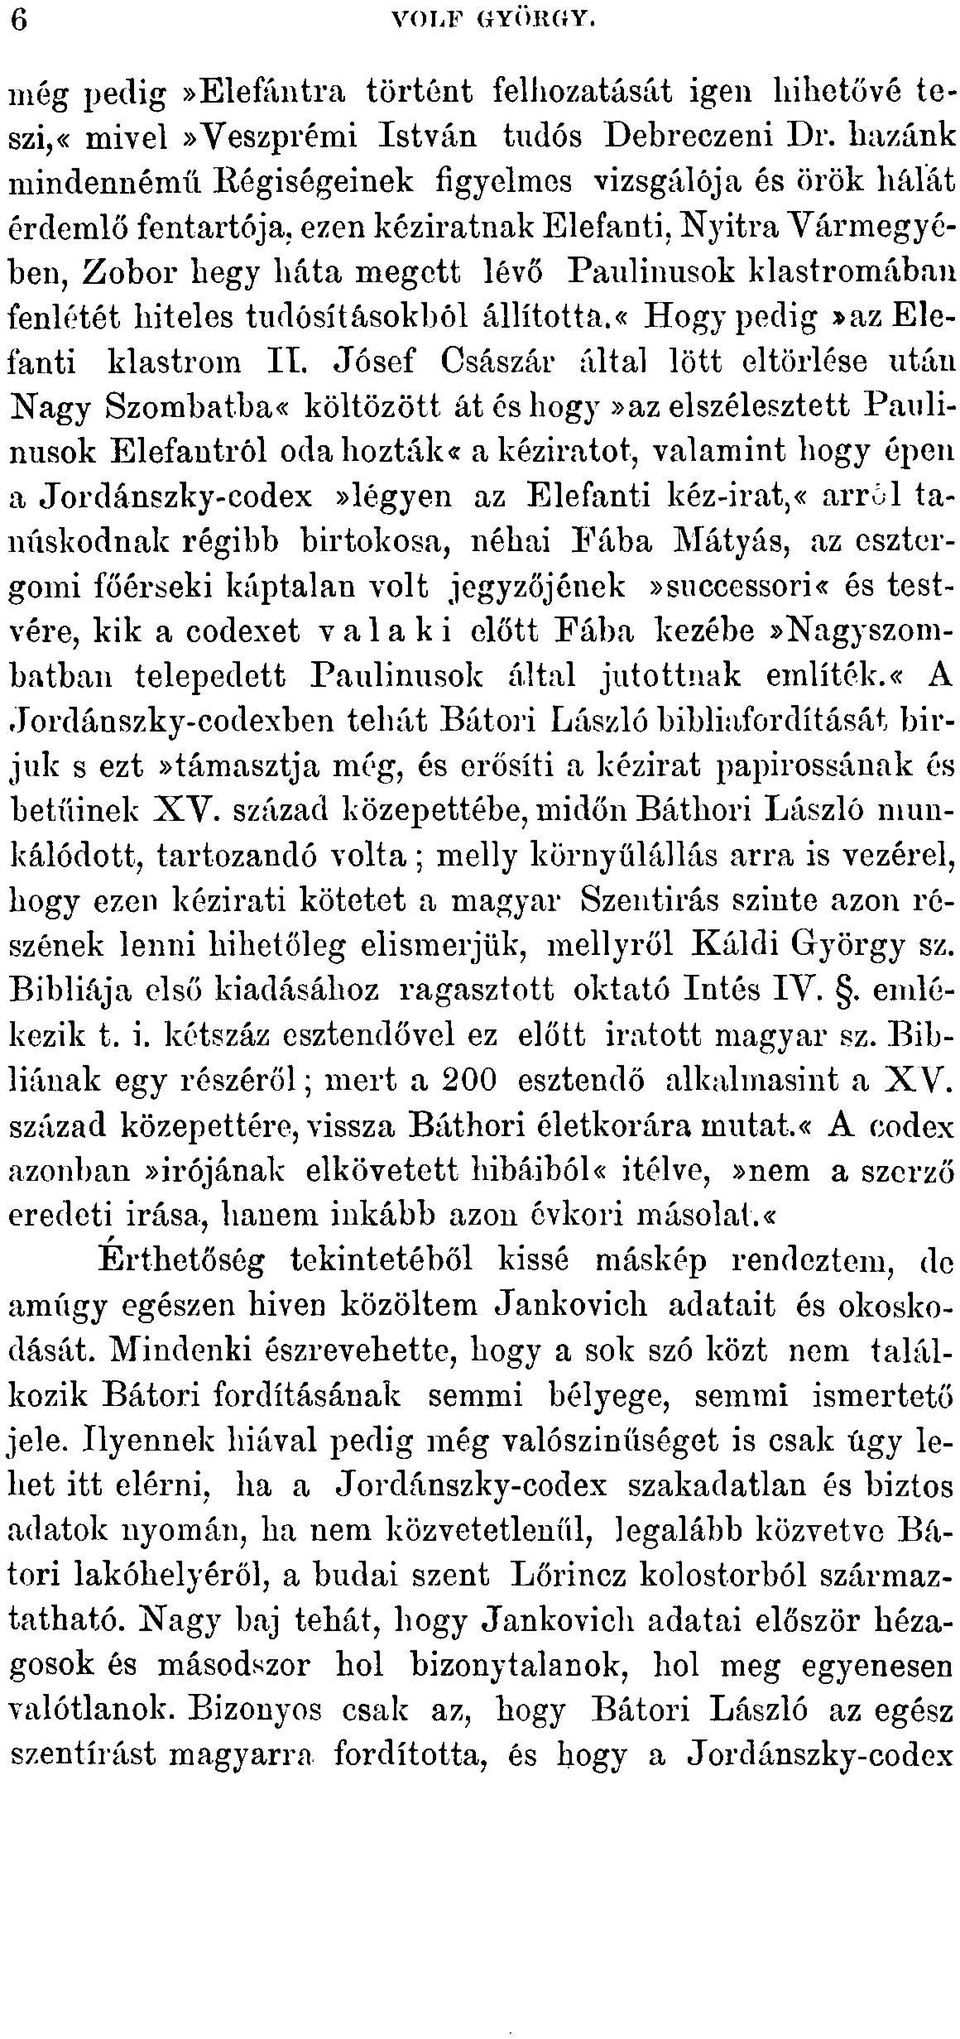 ezen kéziratnak Elefauti, Nyitra Vármegyében, Zobor hegy háta megctt lévő Paulinusok klastromában fenlétét hiteles tudósításokból állította.«hogy pedig»azeleí'anti klastrom II.